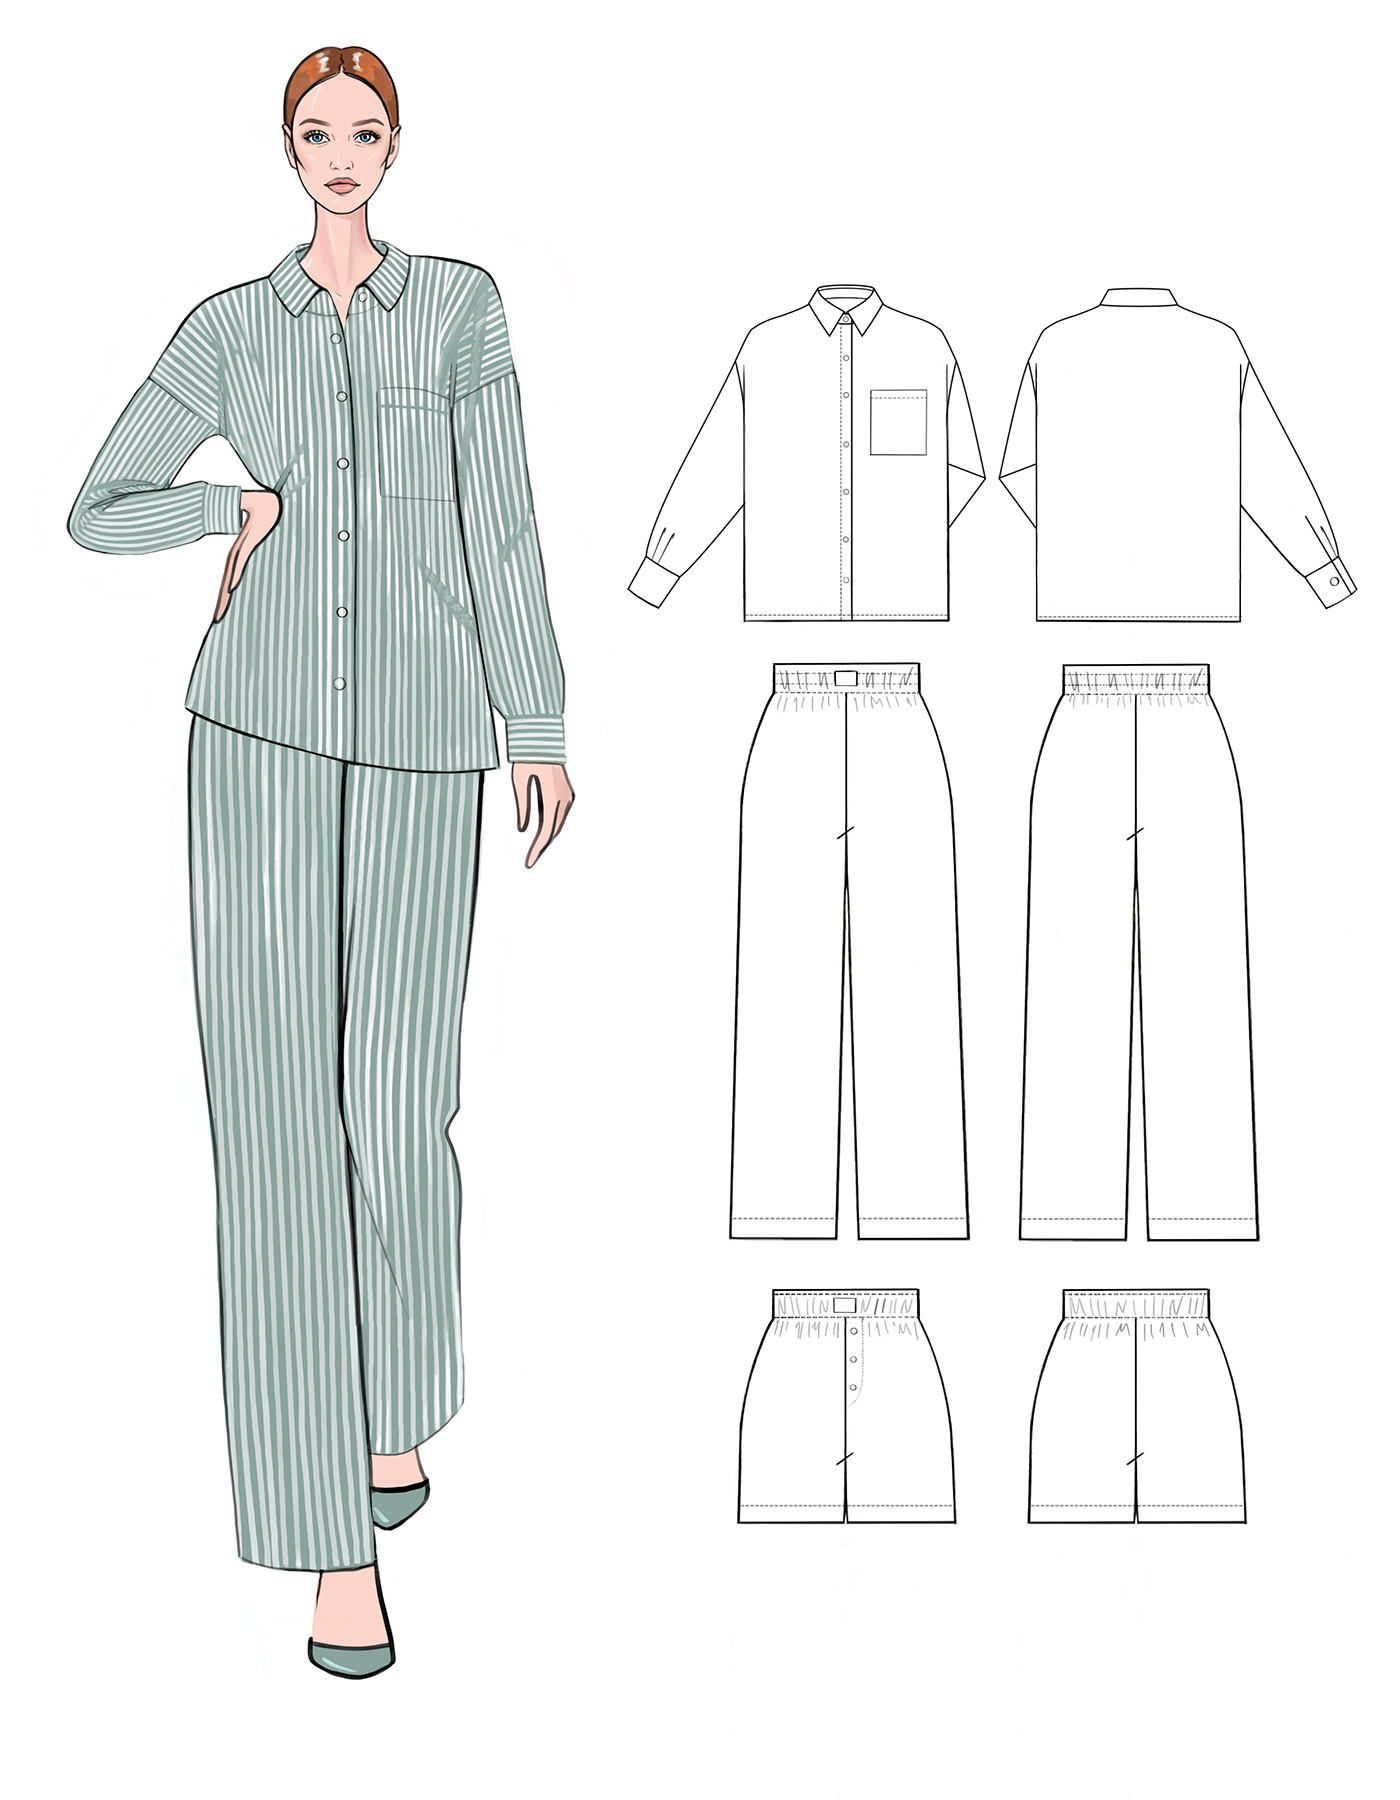 дизайн одежды эскиз clothes design технический рисунок эскиз одежды 